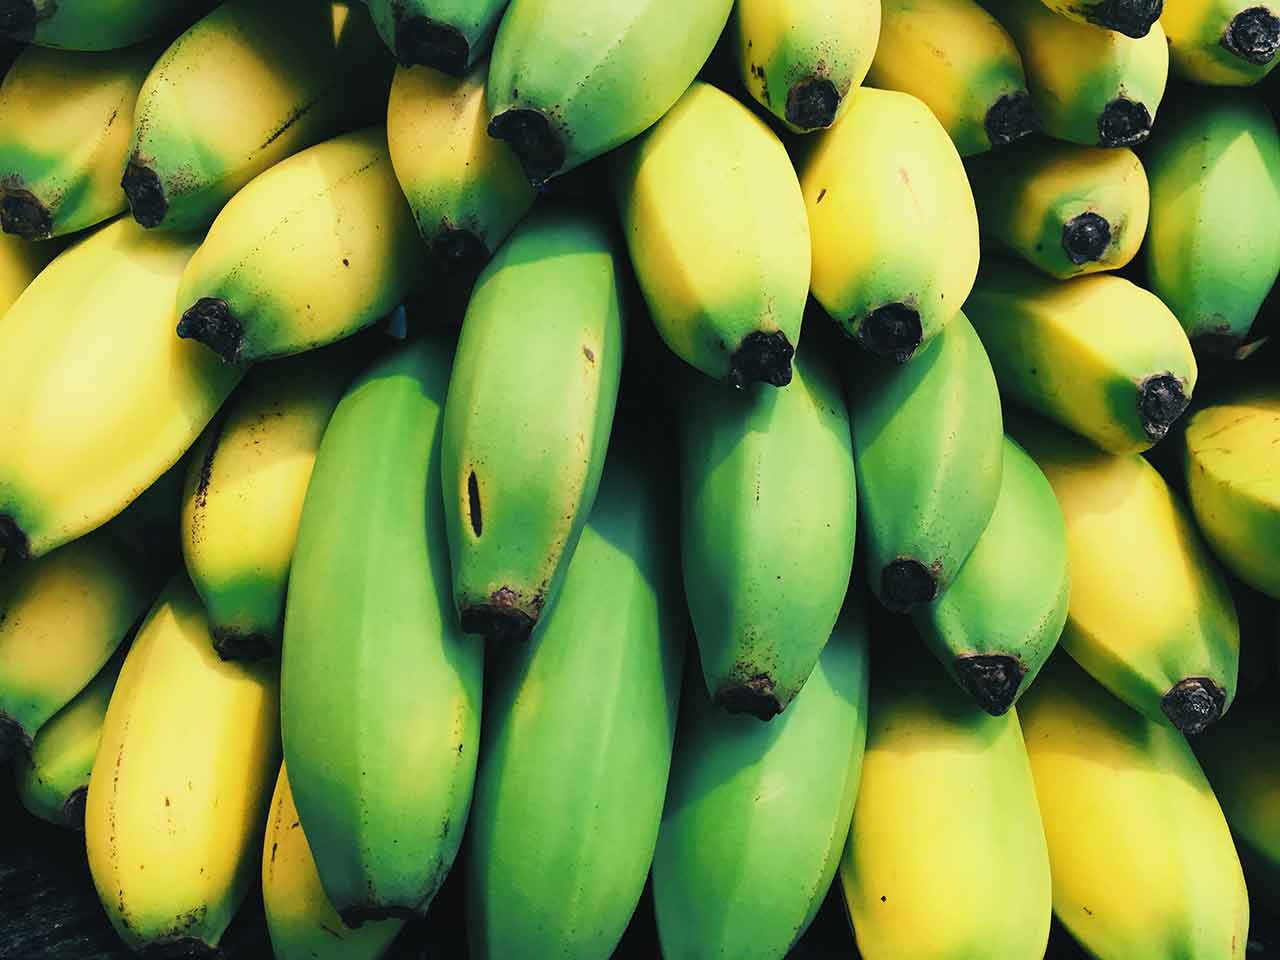 Almacenamiento de plátanos: ¿cómo almacenarlos durante más tiempo?